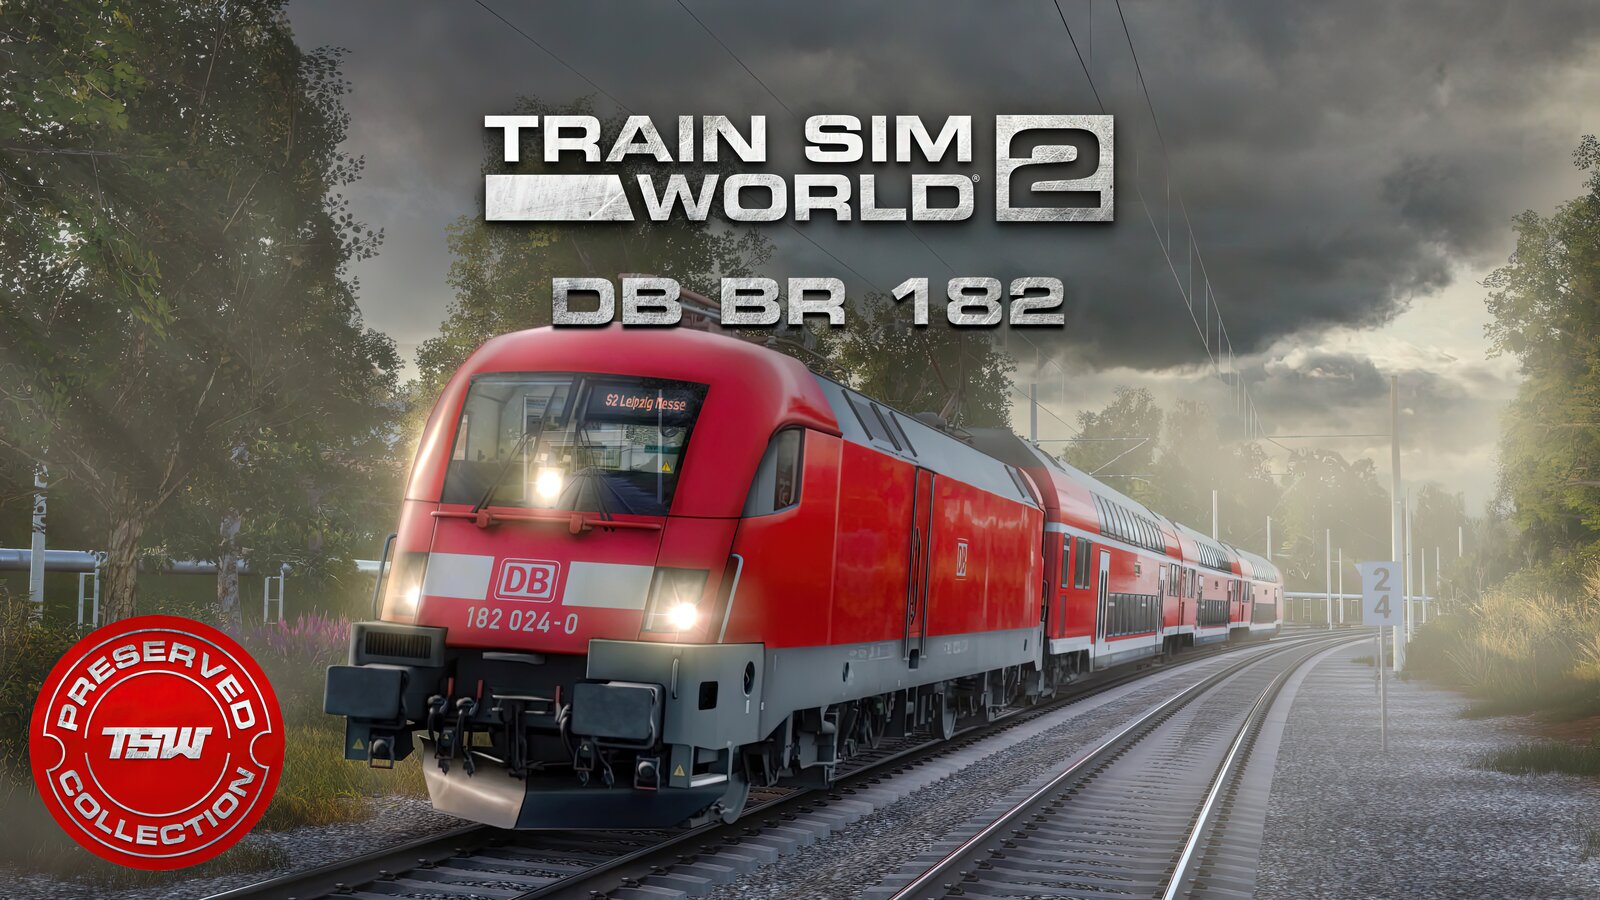 Train Sim World 2 - DB BR 182 Loco